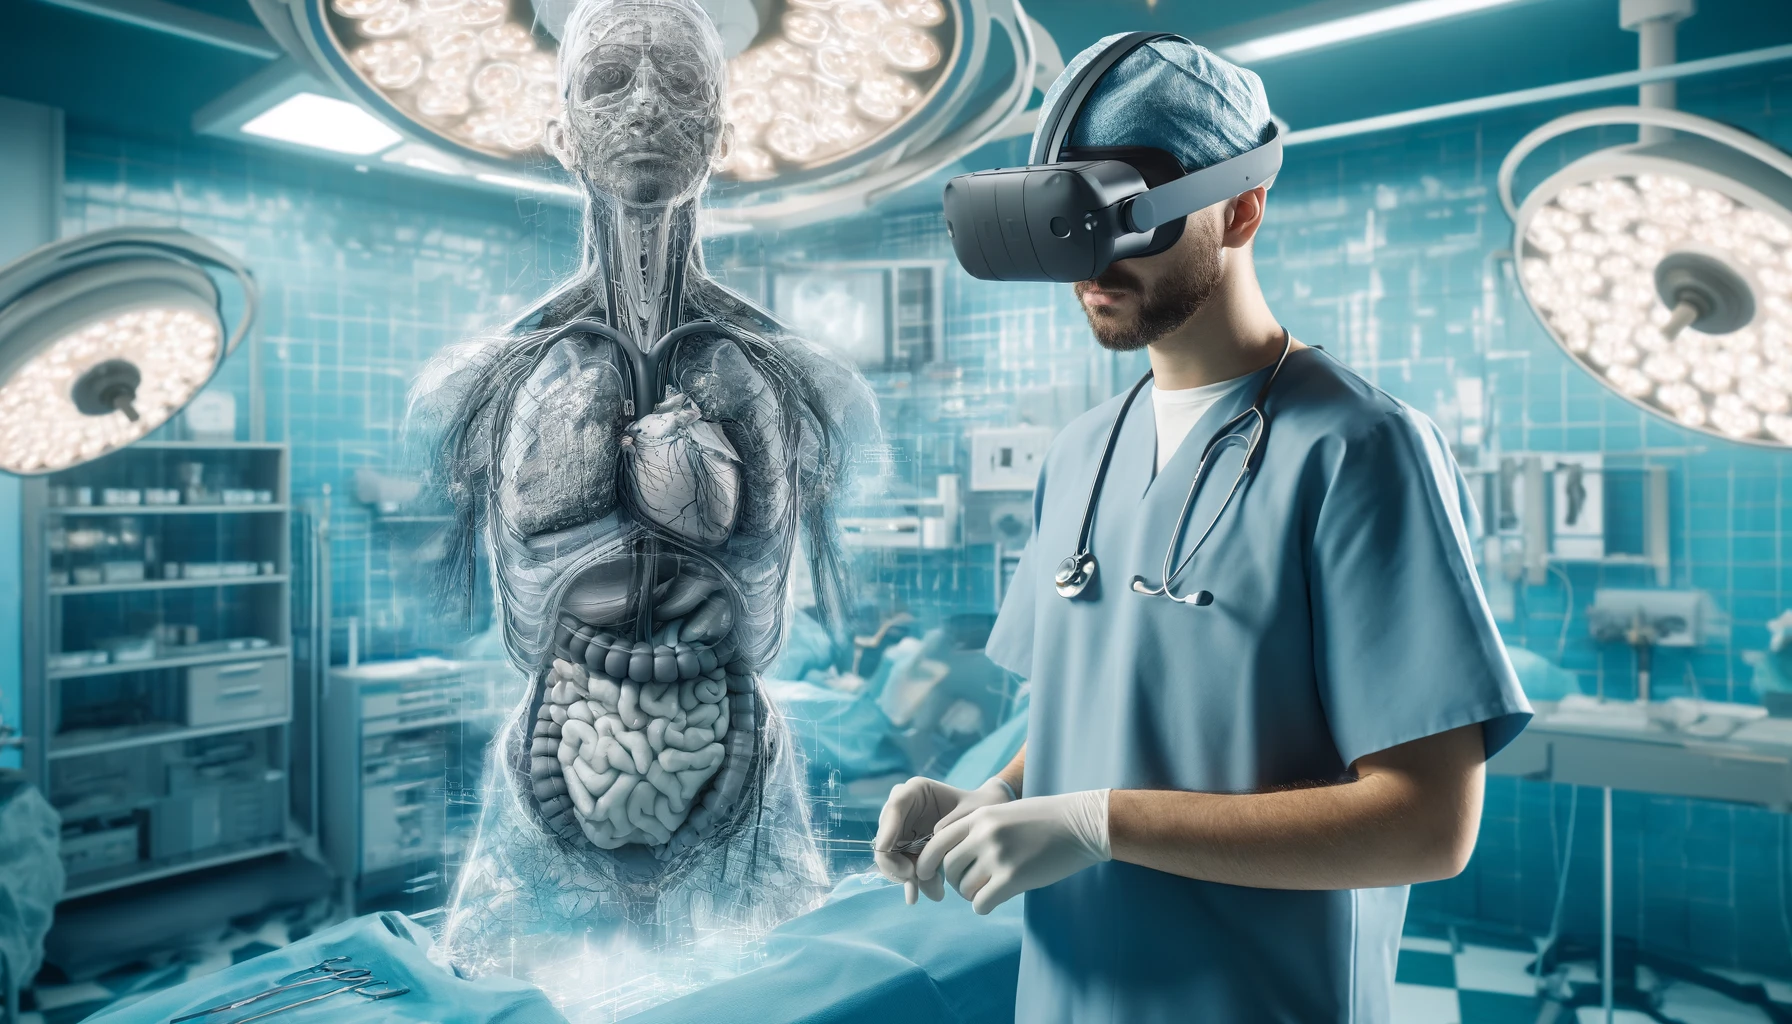 Un cirujano utilizando equipo de realidad virtual para simular un procedimiento quirúrgico. La imagen muestra al cirujano en un quirófano, utilizando un visor VR que muestra estructuras anatómicas detalladas y herramientas quirúrgicas.